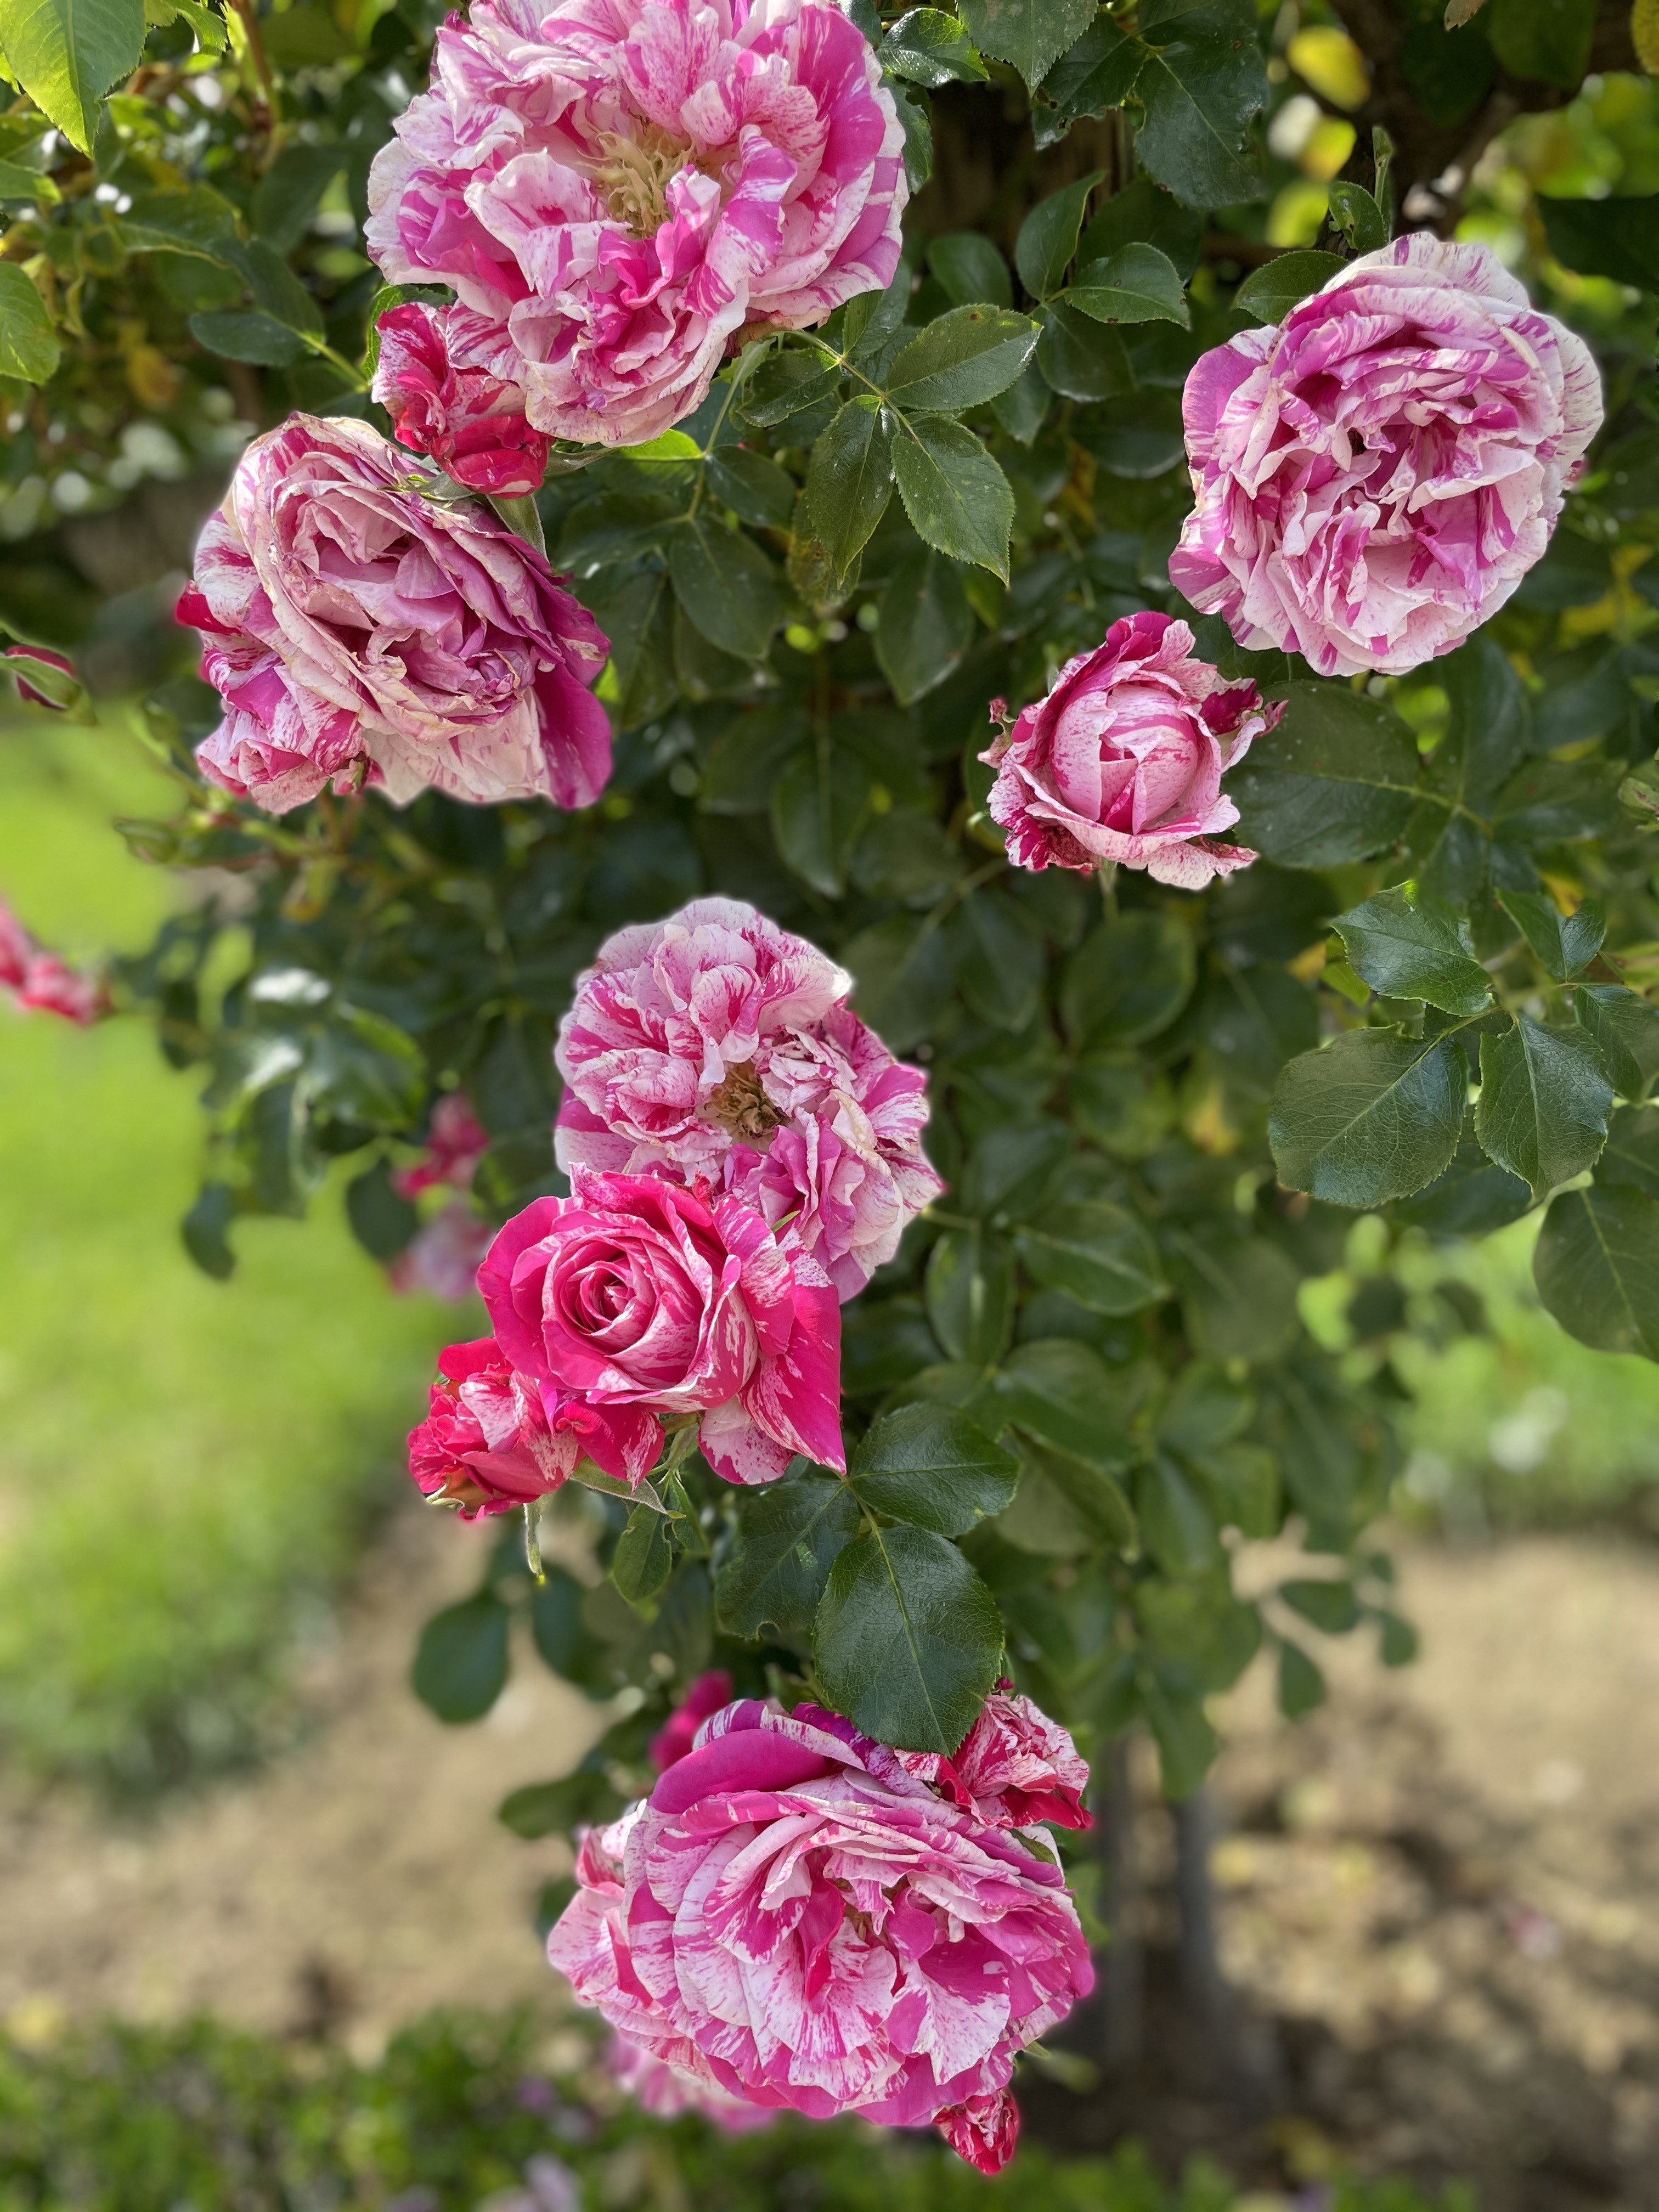 ６月はバラの季節 バガテル公園のバラが満開 Chichi Paris パリに住むエステティシャンのblog Paris Madame Figaro Jp フィガロジャポン